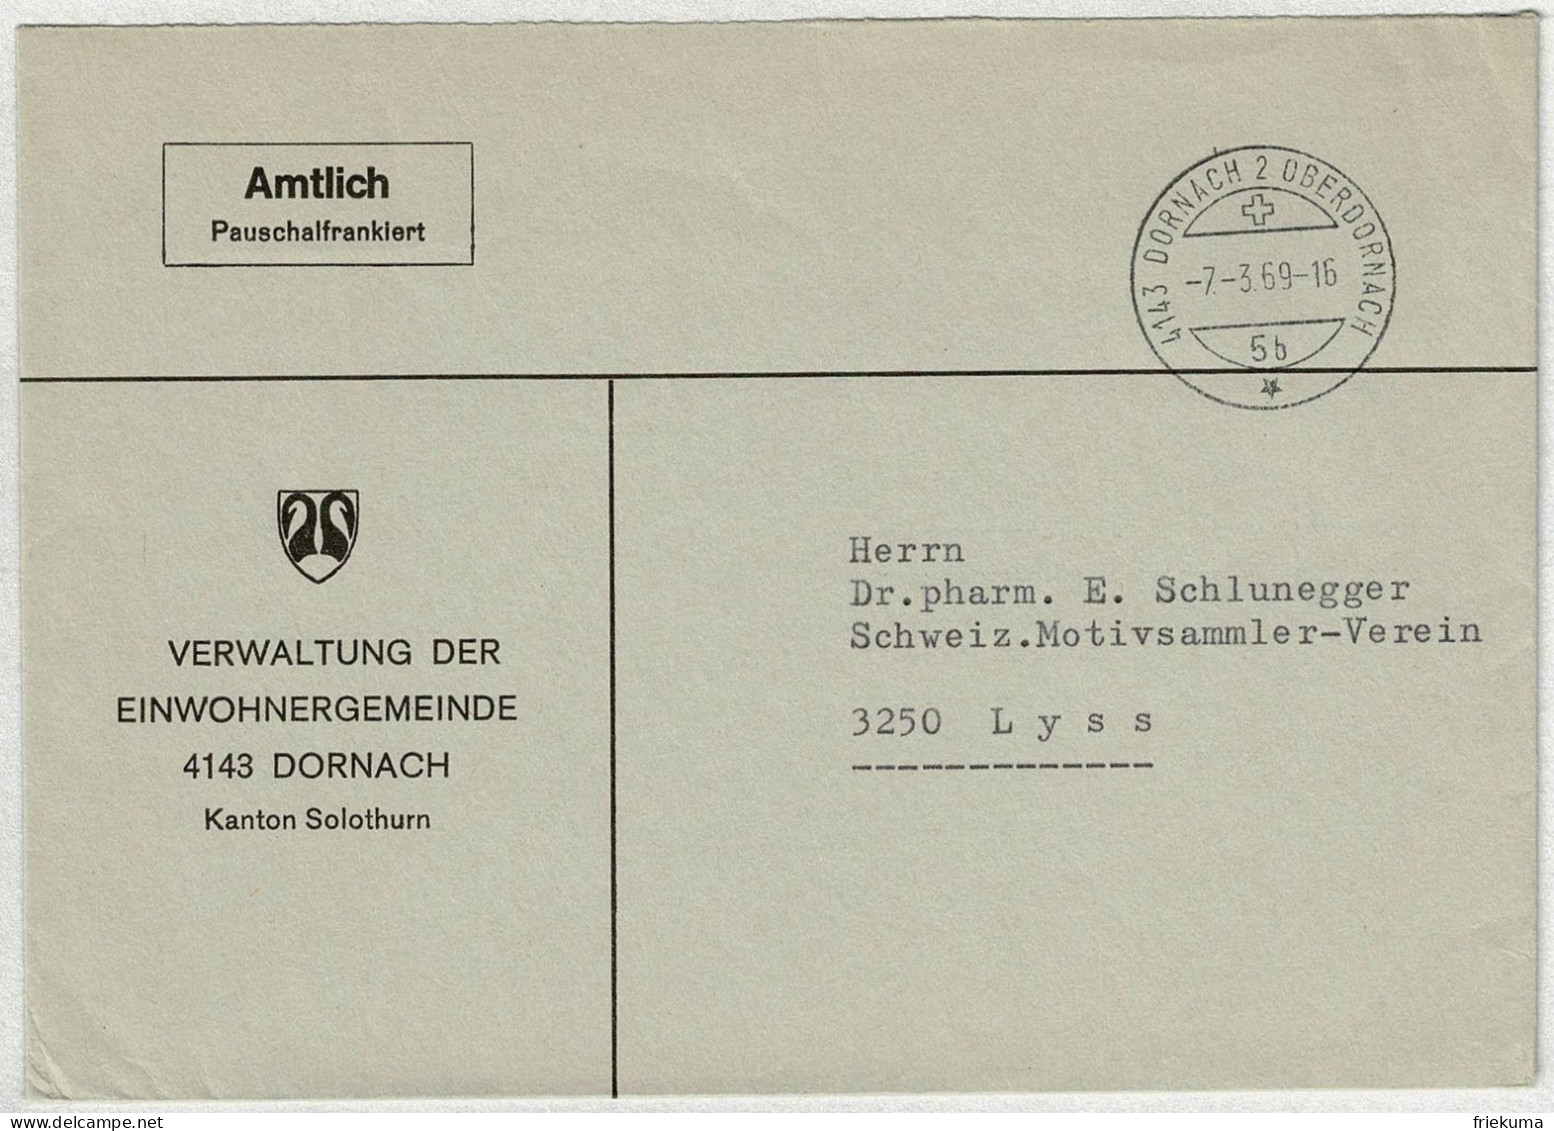 Schweiz 1969, Brief Amtlich Pauschalfrankiert Dornach - Lyss - Marcofilie